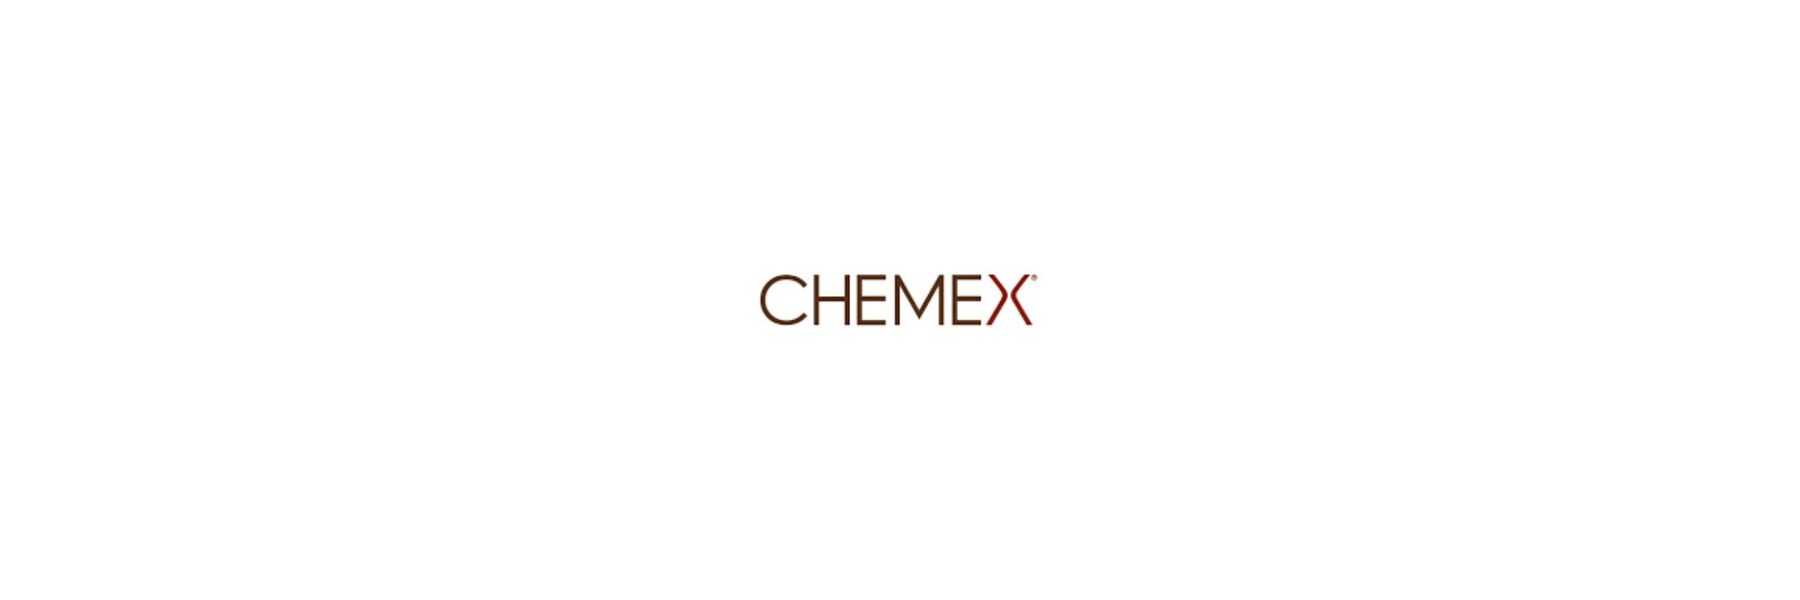 Das Unternehmen Chemex geht auf die innovativen...